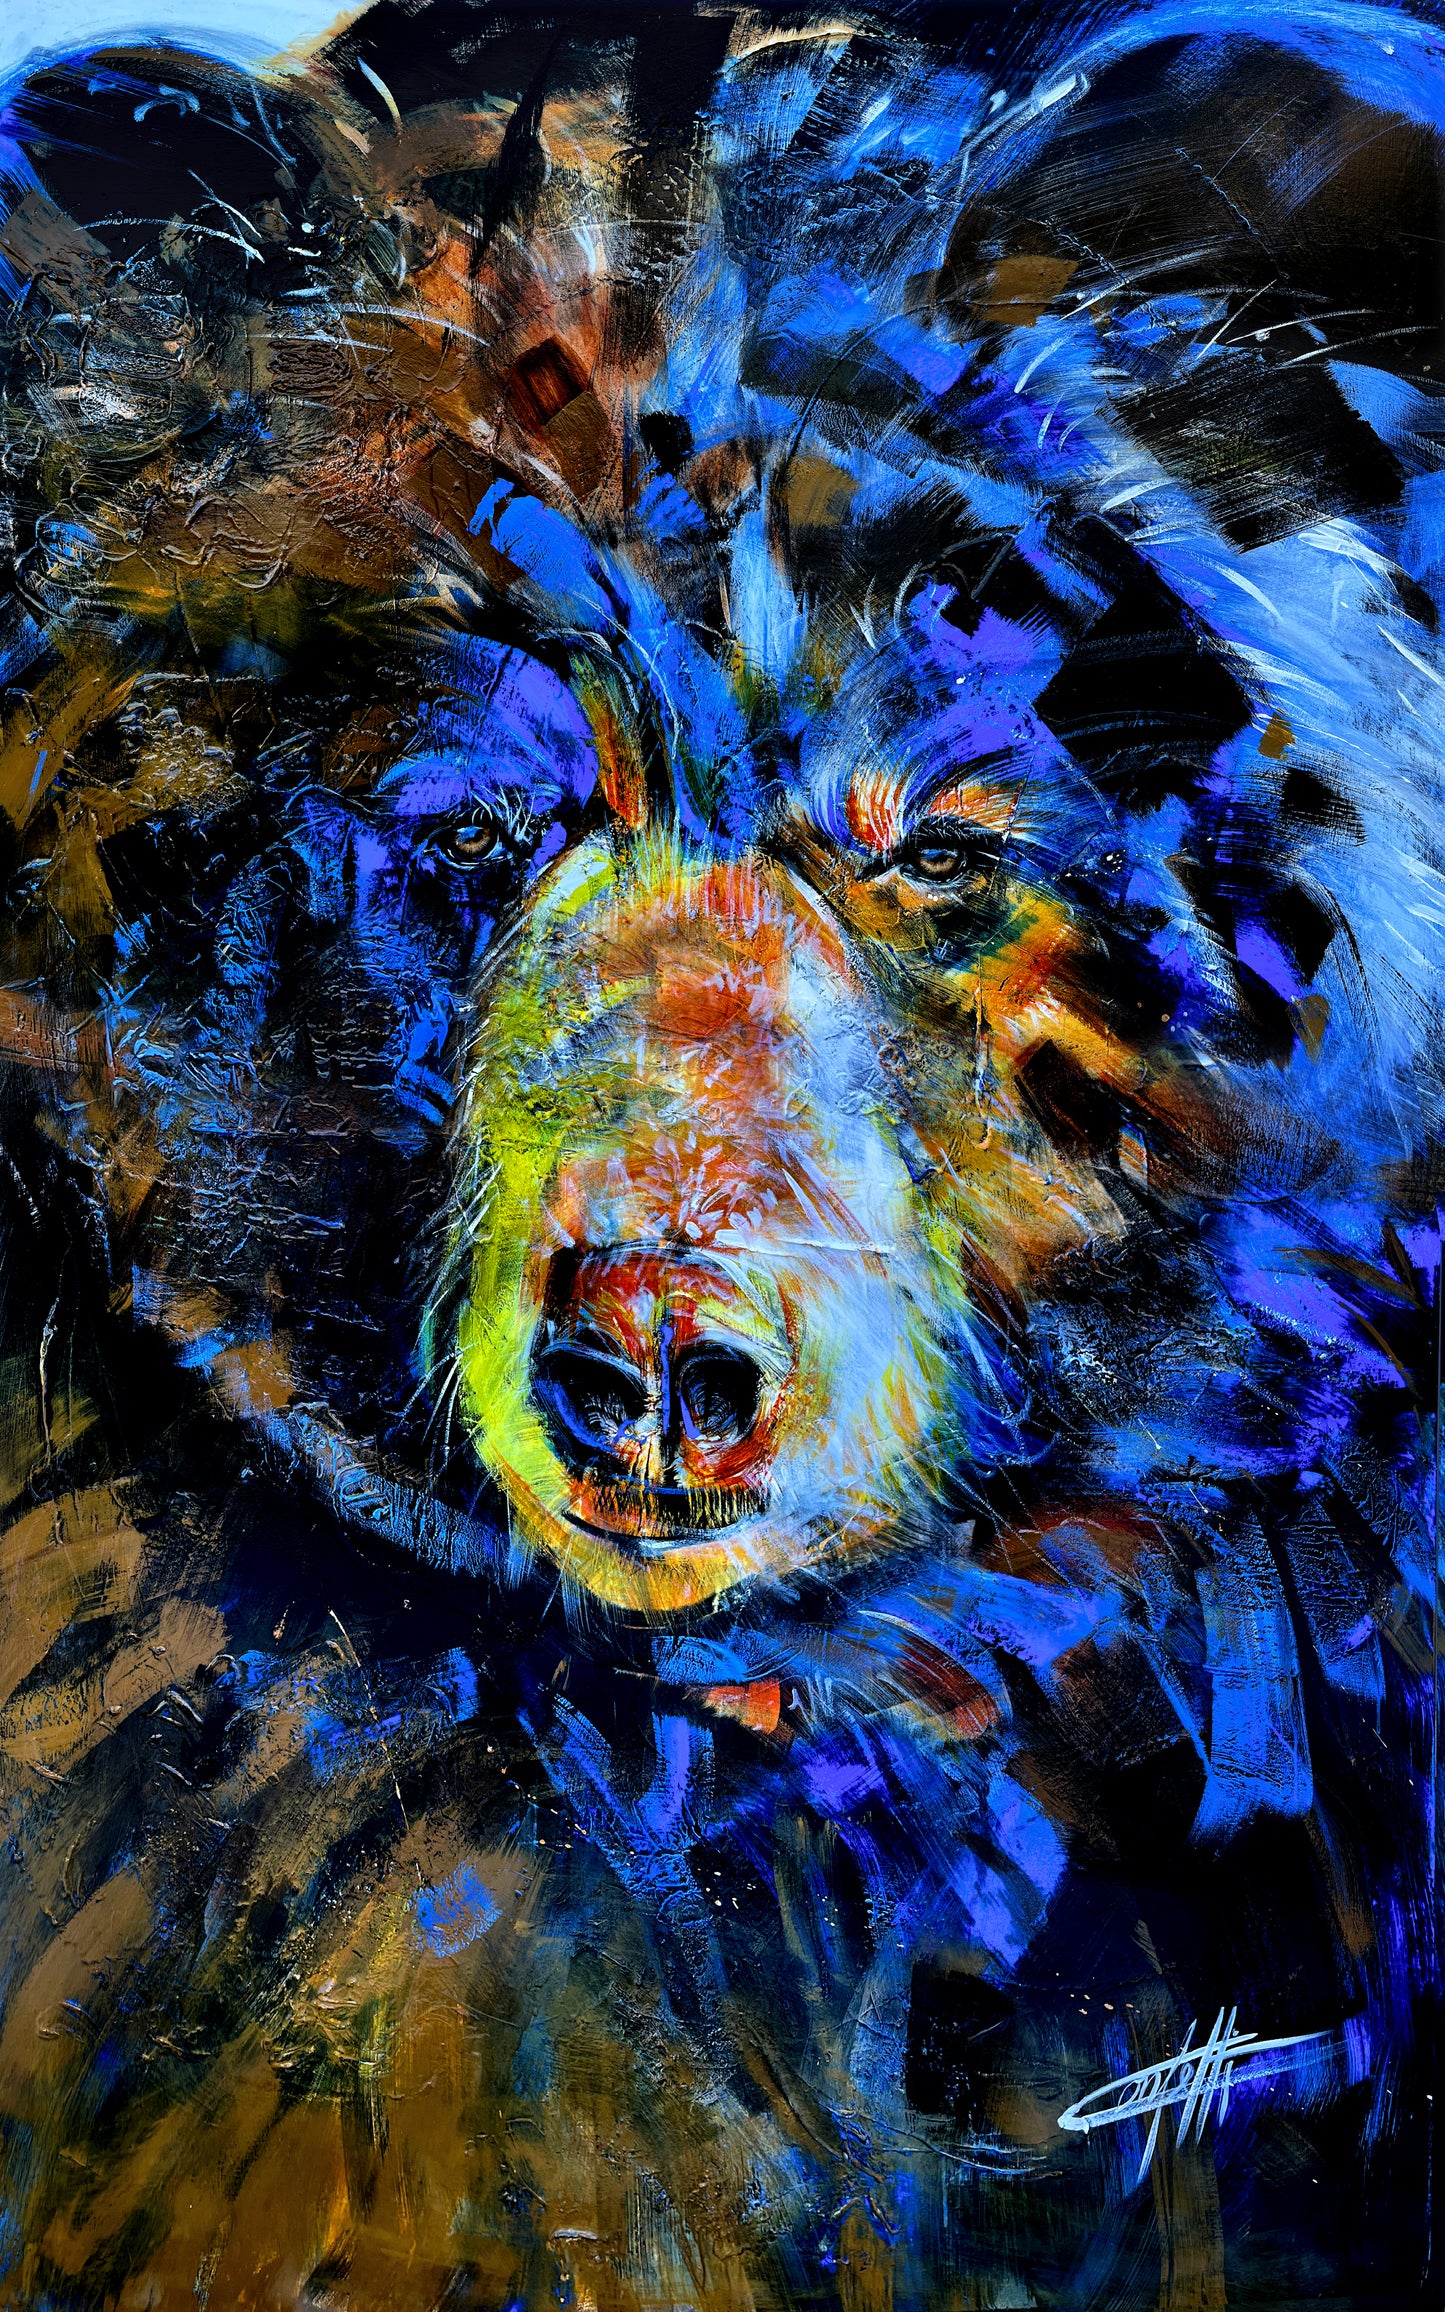 Simon l'ours / oeuvre de l'artiste confettieur, ours coloré bleu et orange, passionné